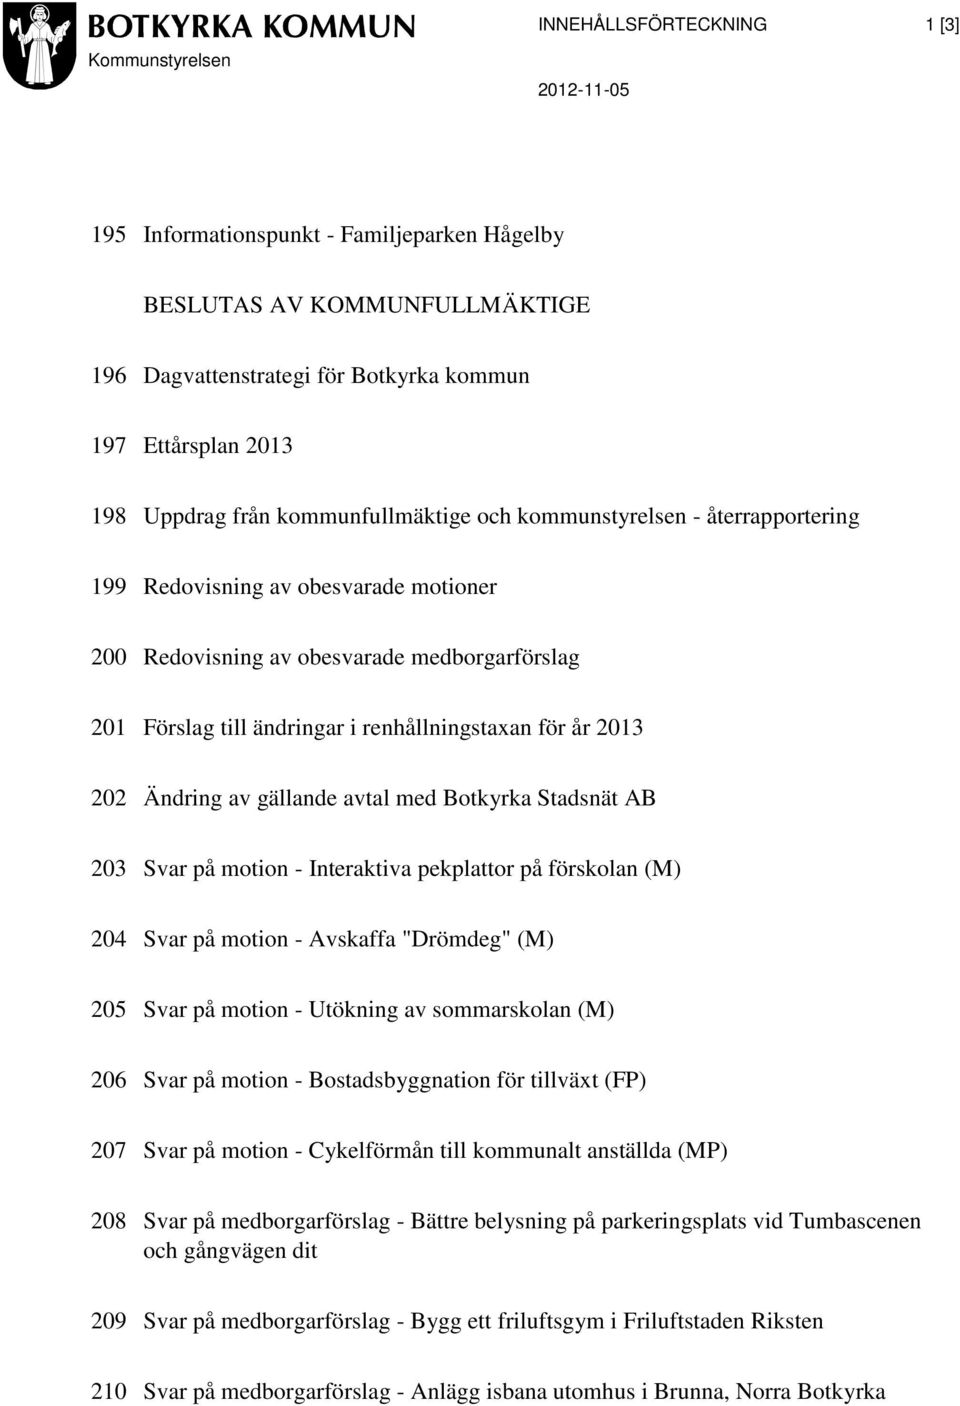 renhållningstaxan för år 2013 202 Ändring av gällande avtal med Botkyrka Stadsnät AB 203 Svar på motion - Interaktiva pekplattor på förskolan (M) 204 Svar på motion - Avskaffa "Drömdeg" (M) 205 Svar